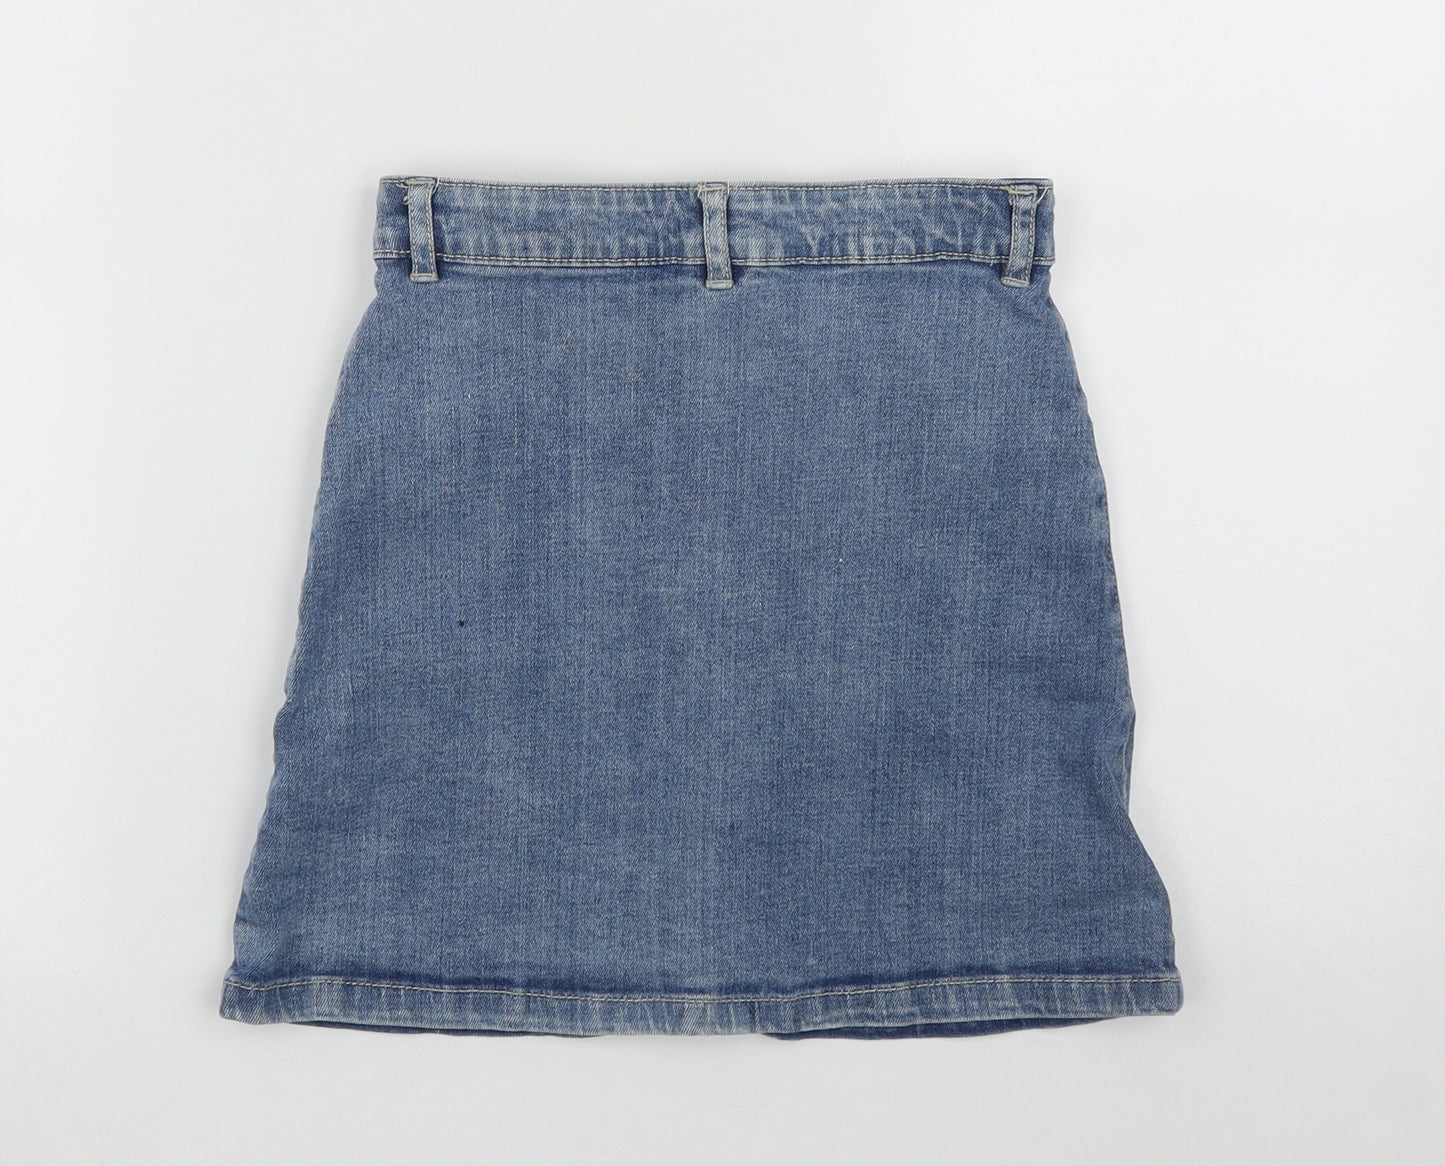 TU Girls Blue  Cotton A-Line Skirt Size 9 Years  Regular Button